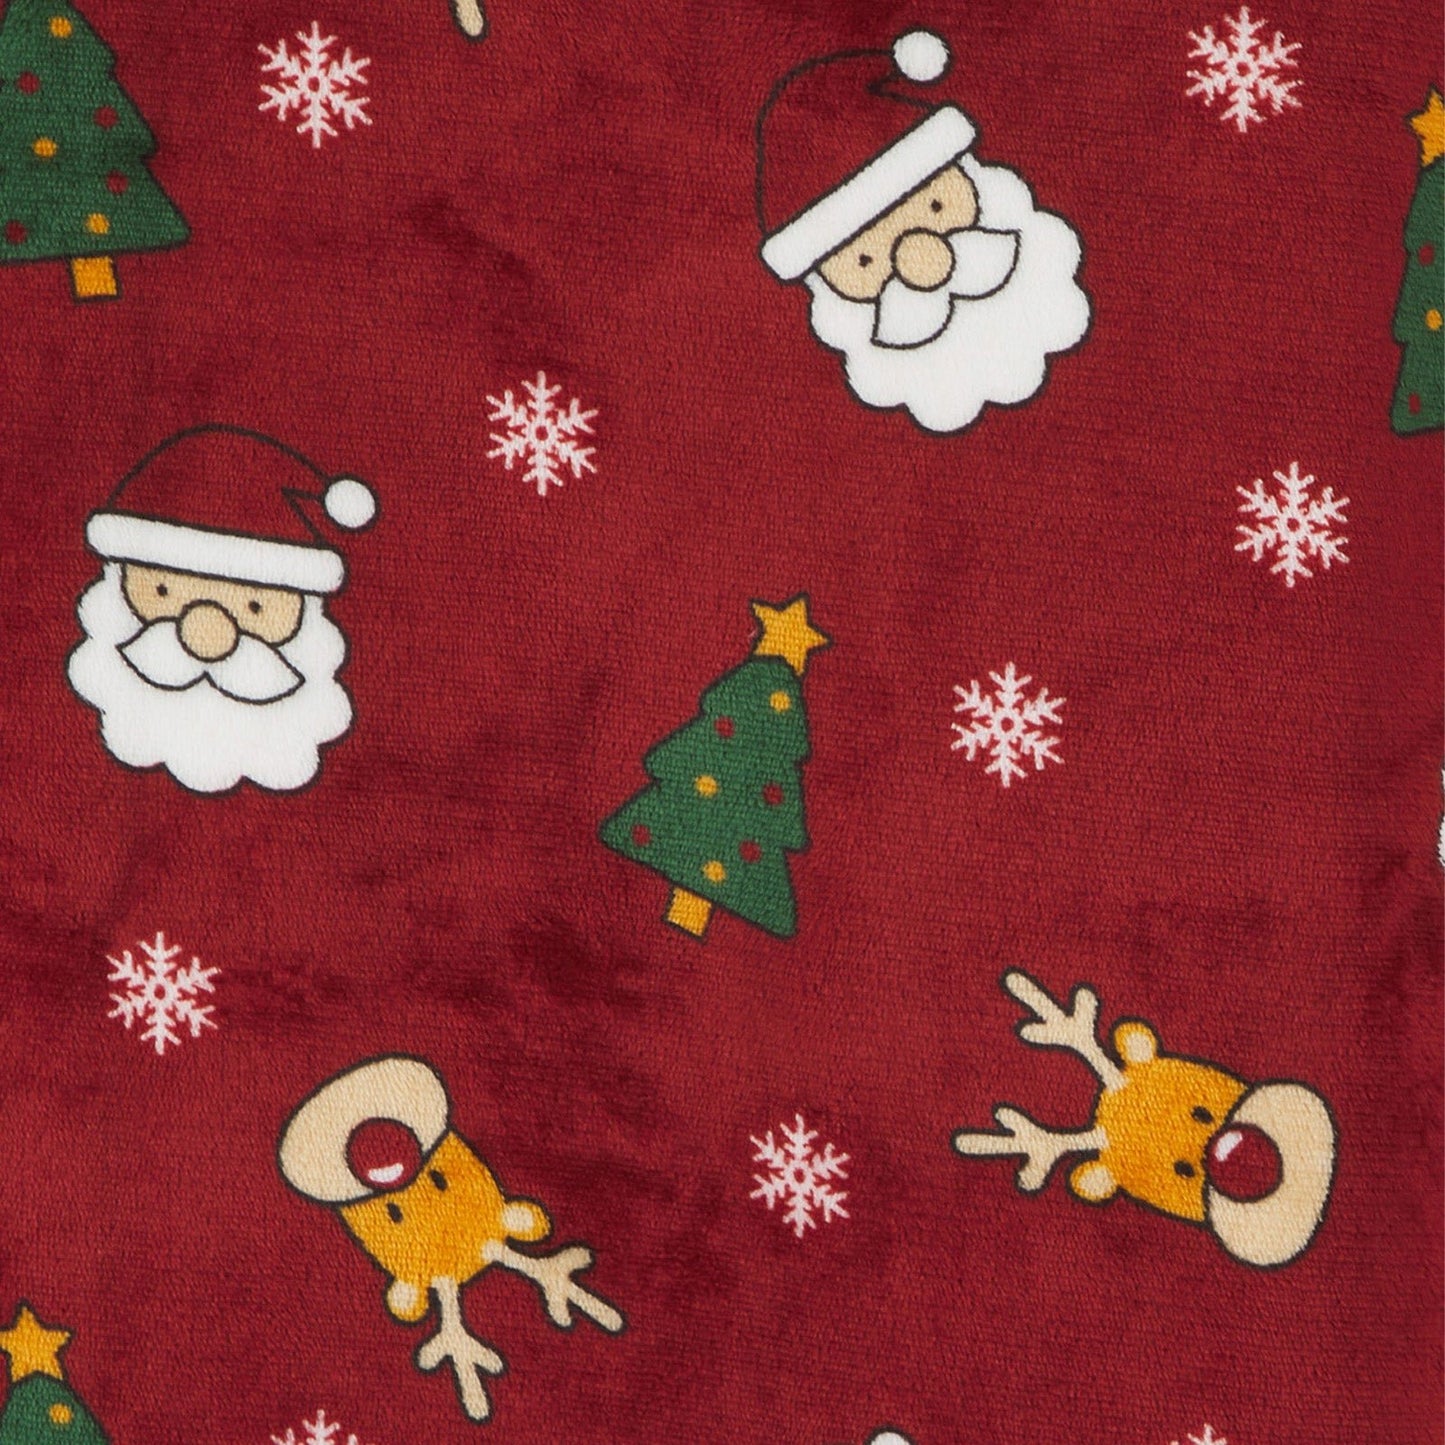 detail shot of santa, tree, reindeer and snowflake pattern on red oversized hoodie